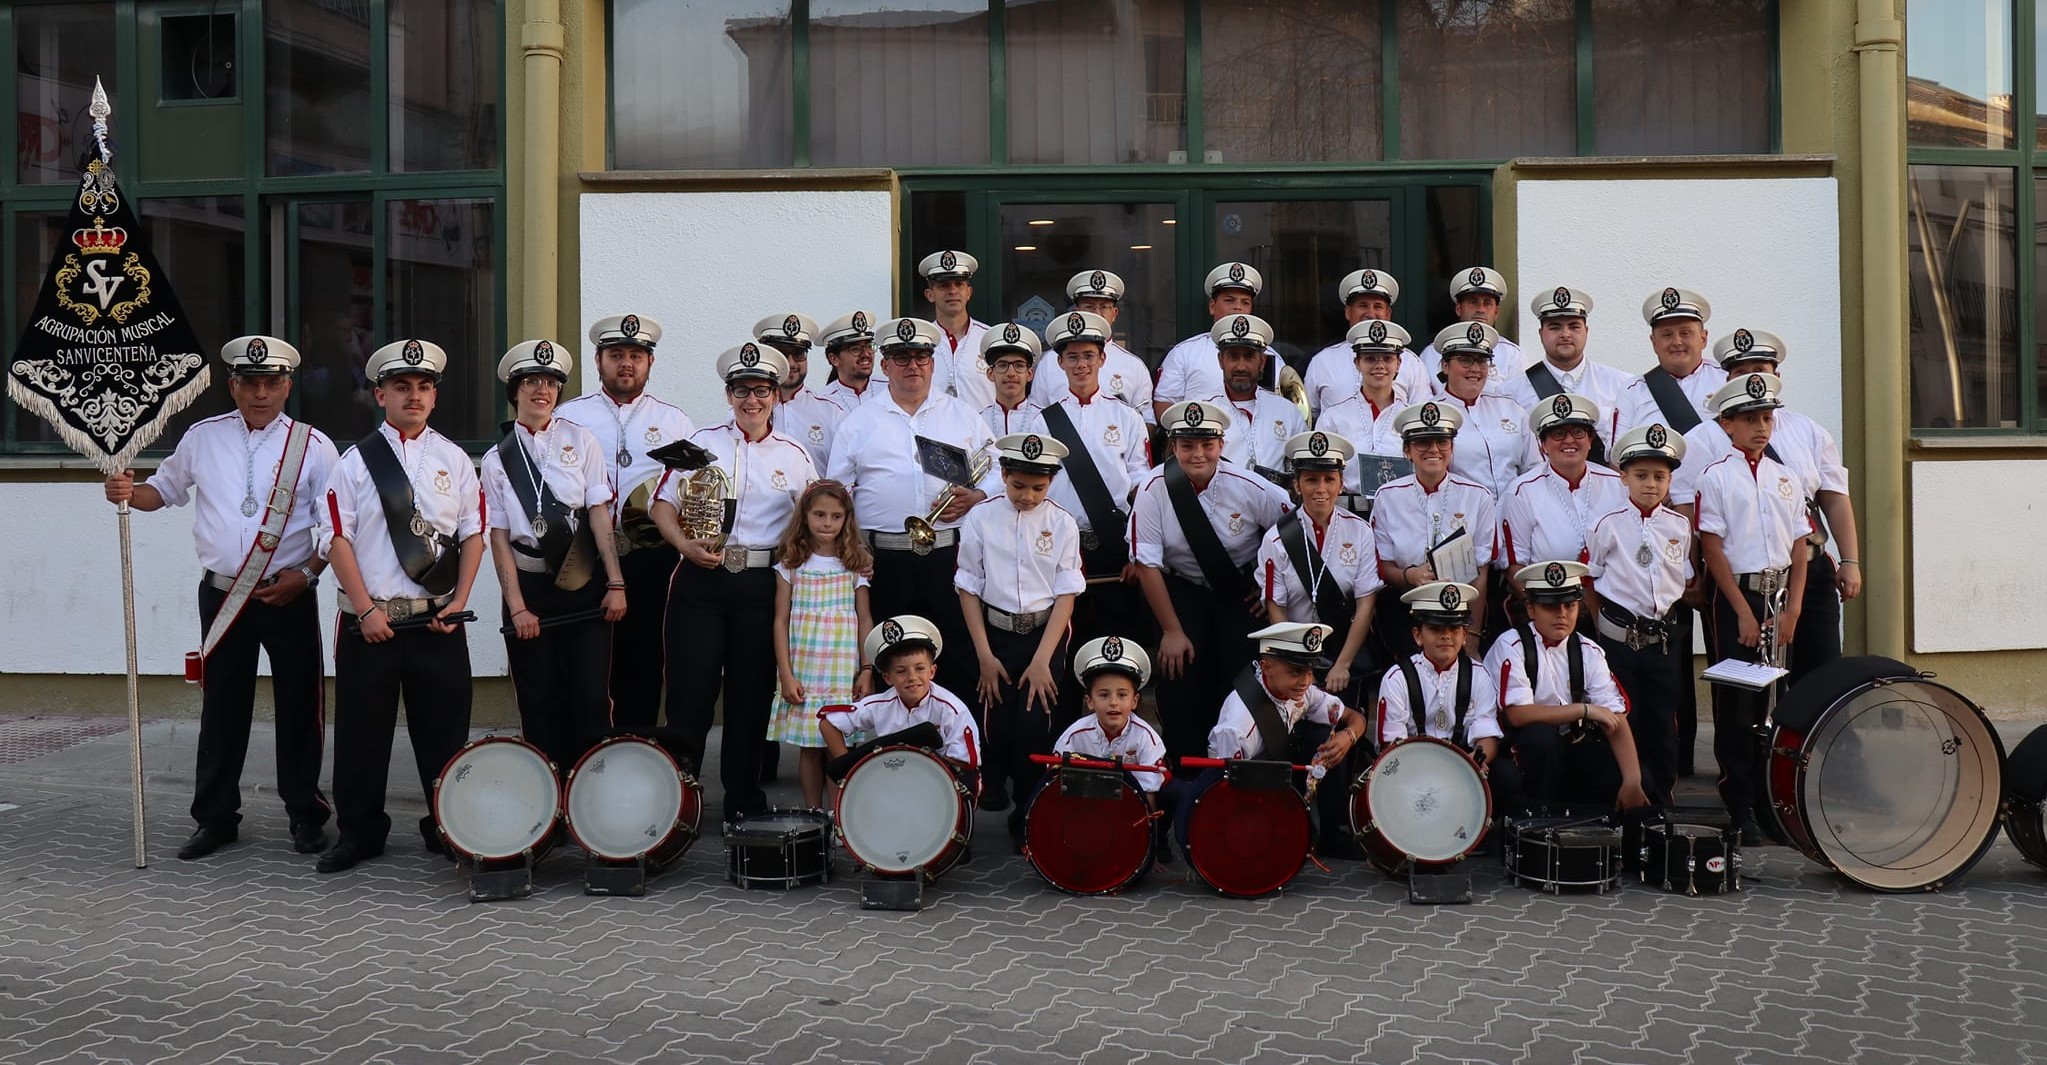 Agrupación Musical de San Vicente de Alcántara